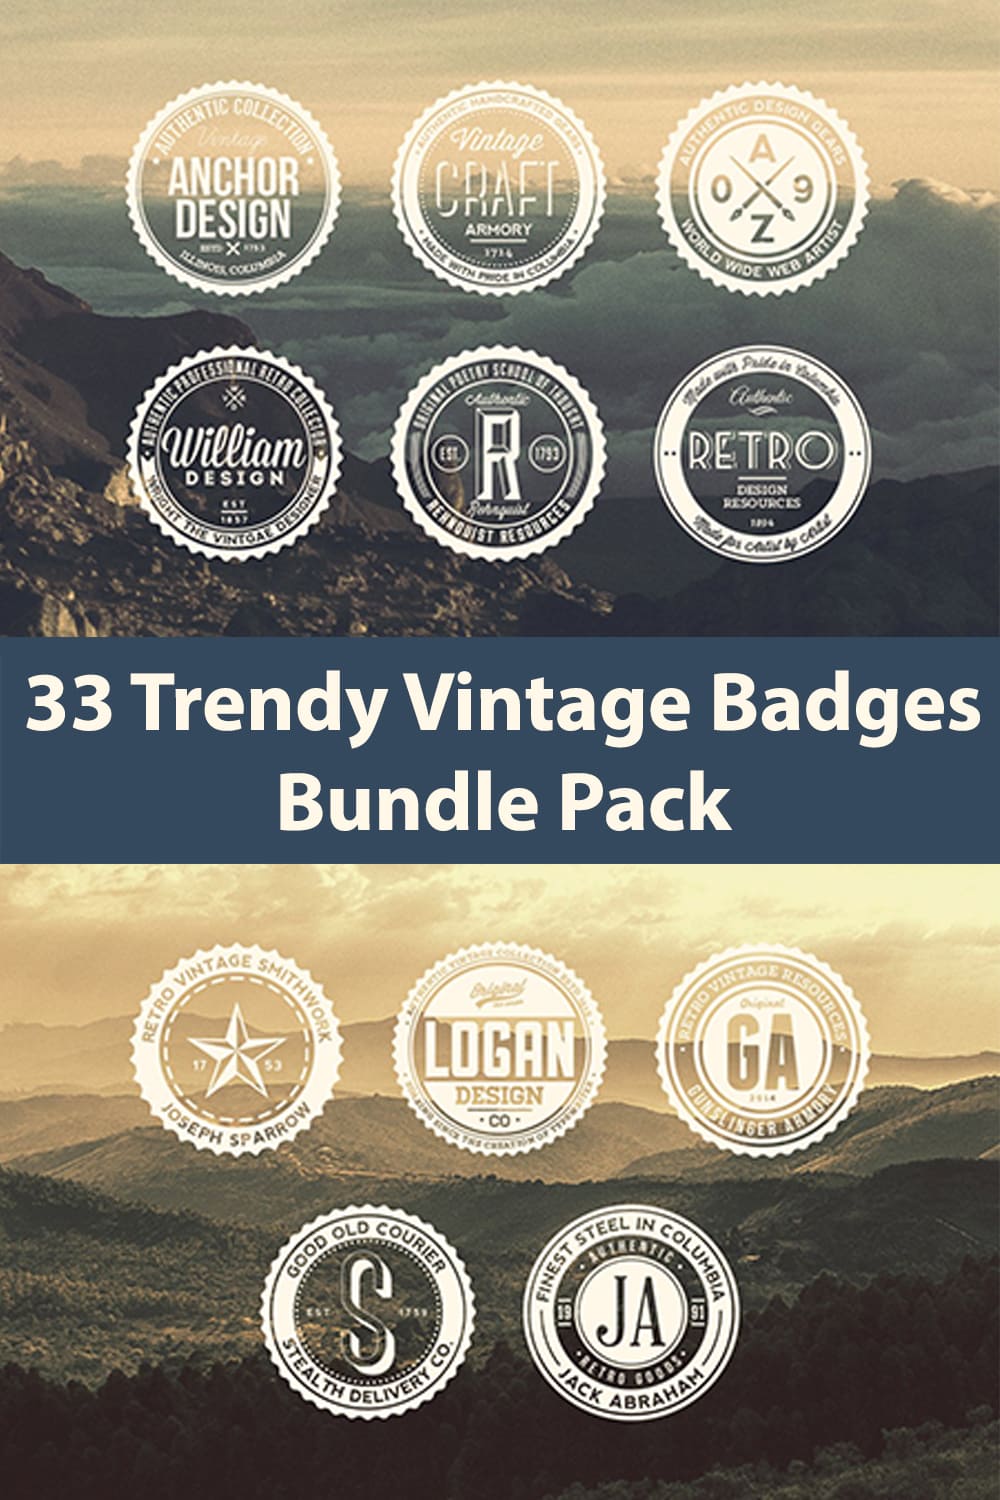 33 Trendy Vintage Badges Bundle Pack - Pinterest.